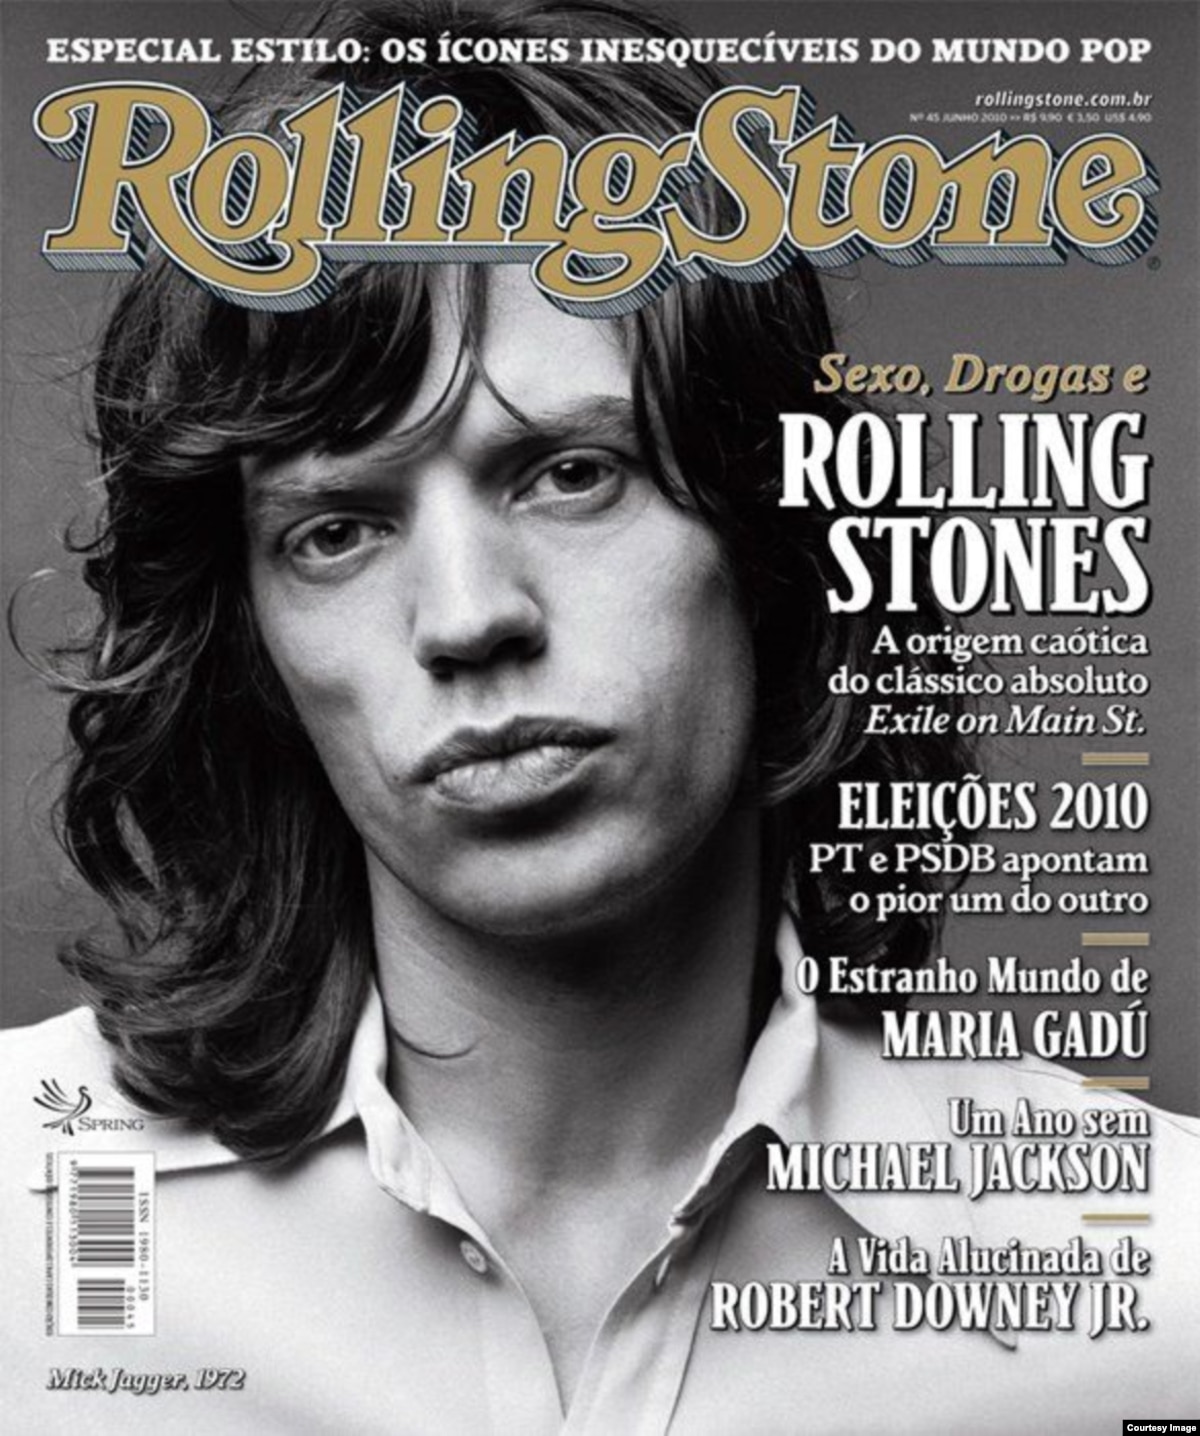 Стоун журнал. Rolling Stone журнал. Мик Джаггер на обложке Rolling Stone. Rolling Stone (Magazine) обложки. Обложки журнала Роллинг Стоун.